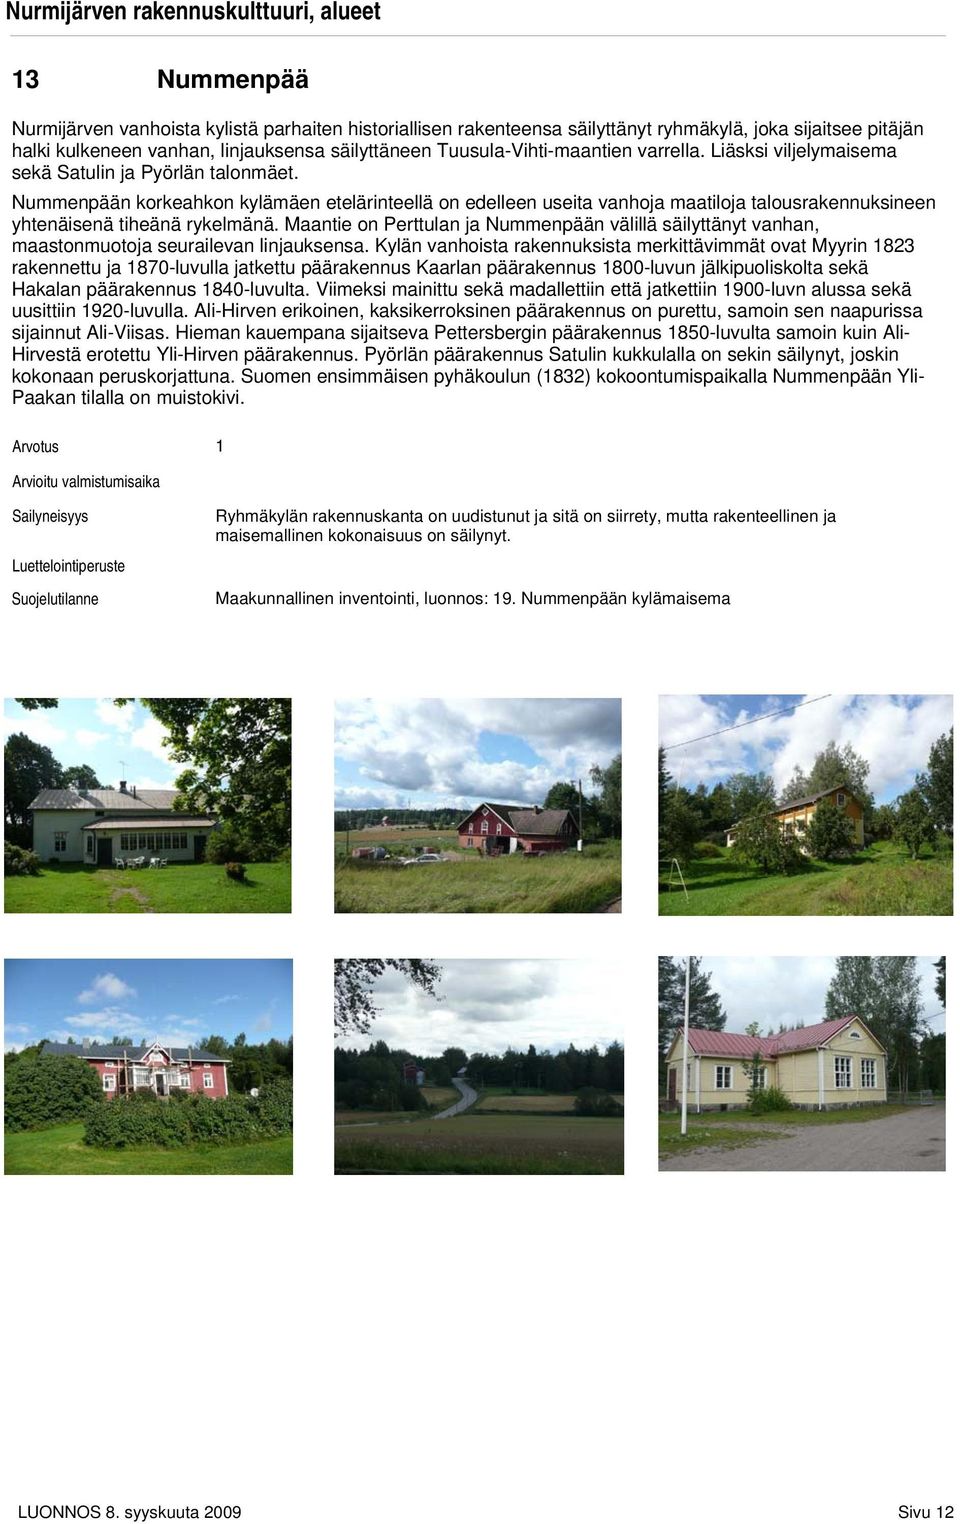 Nummenpään korkeahkon kylämäen etelärinteellä on edelleen useita vanhoja maatiloja talousrakennuksineen yhtenäisenä tiheänä rykelmänä.